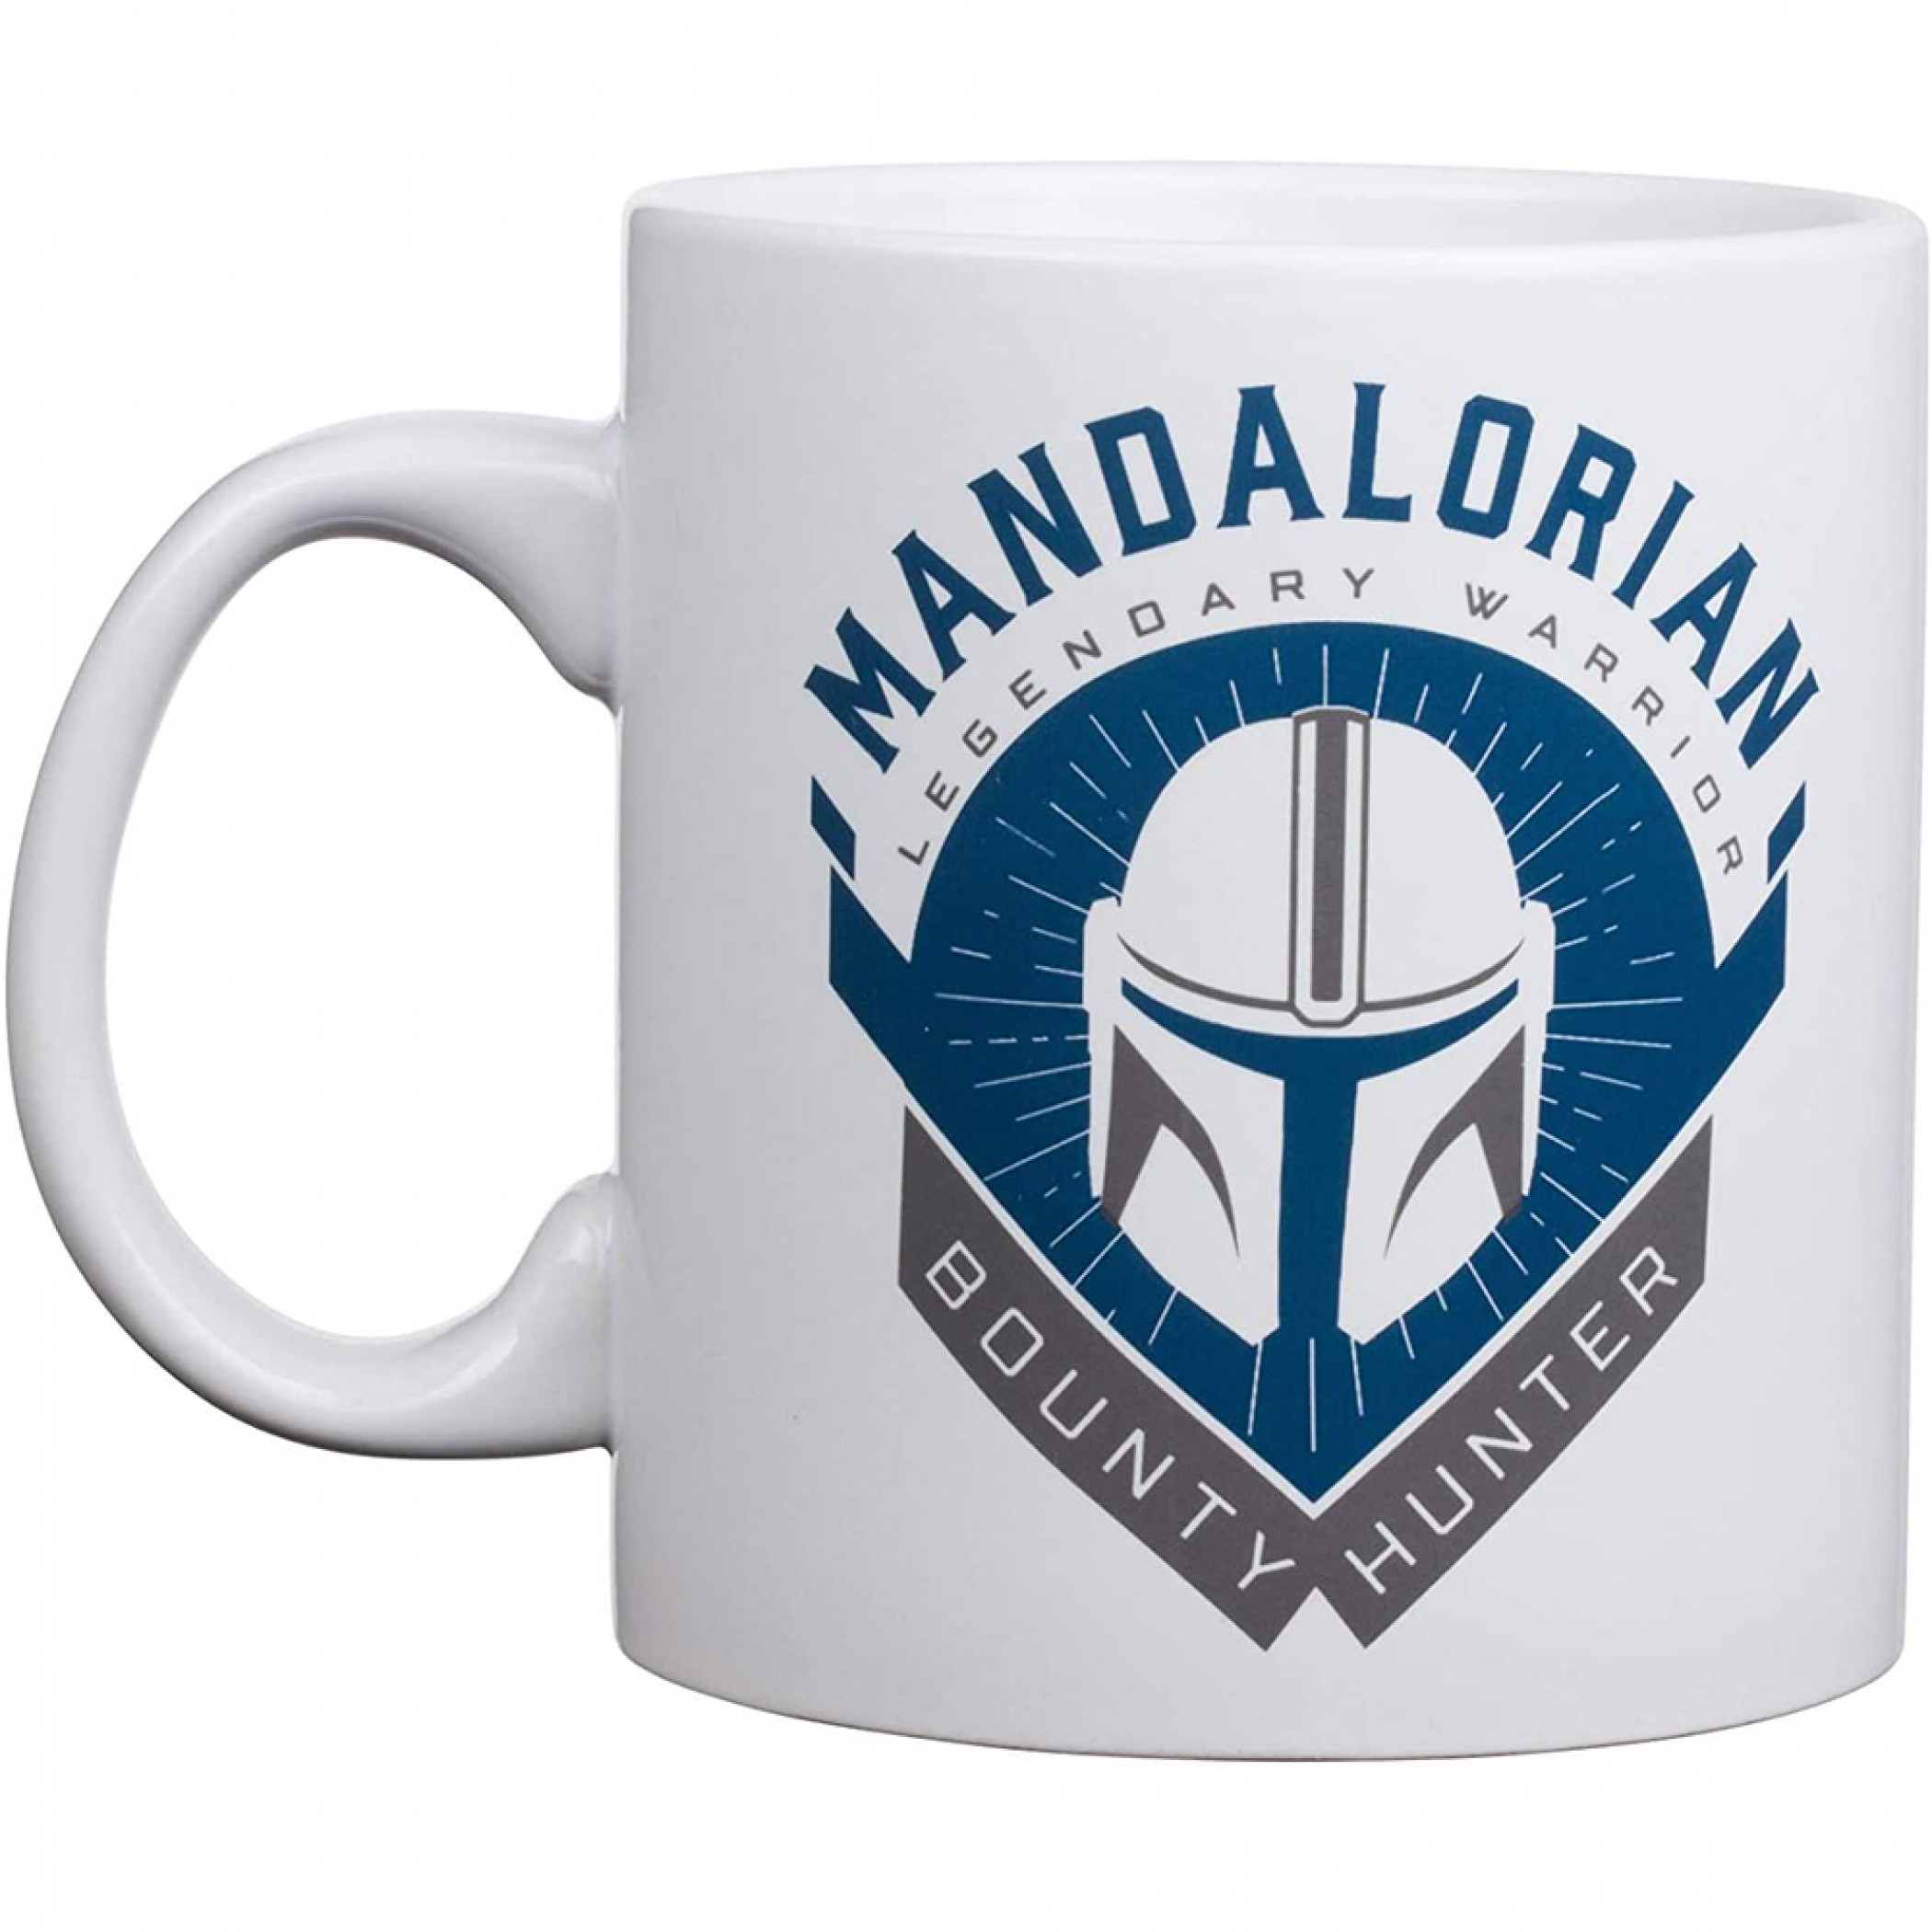 The Mandalorian Blue Ceramic Mug, 20 oz.